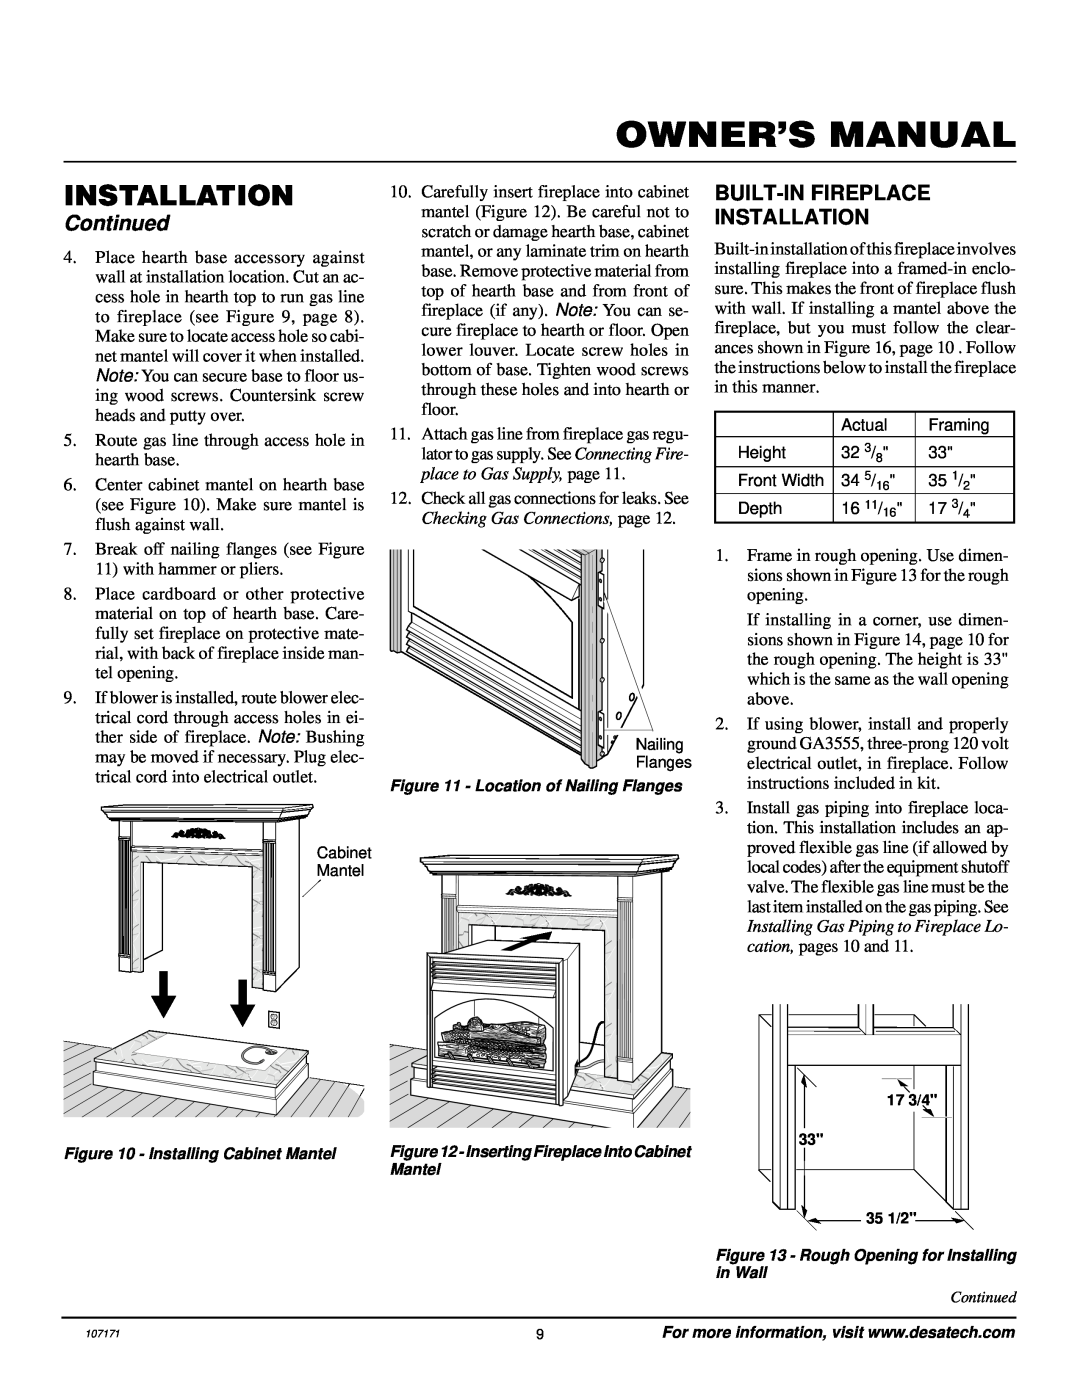 Desa VSGF33NR installation manual Built-Infireplace Installation, Continued 